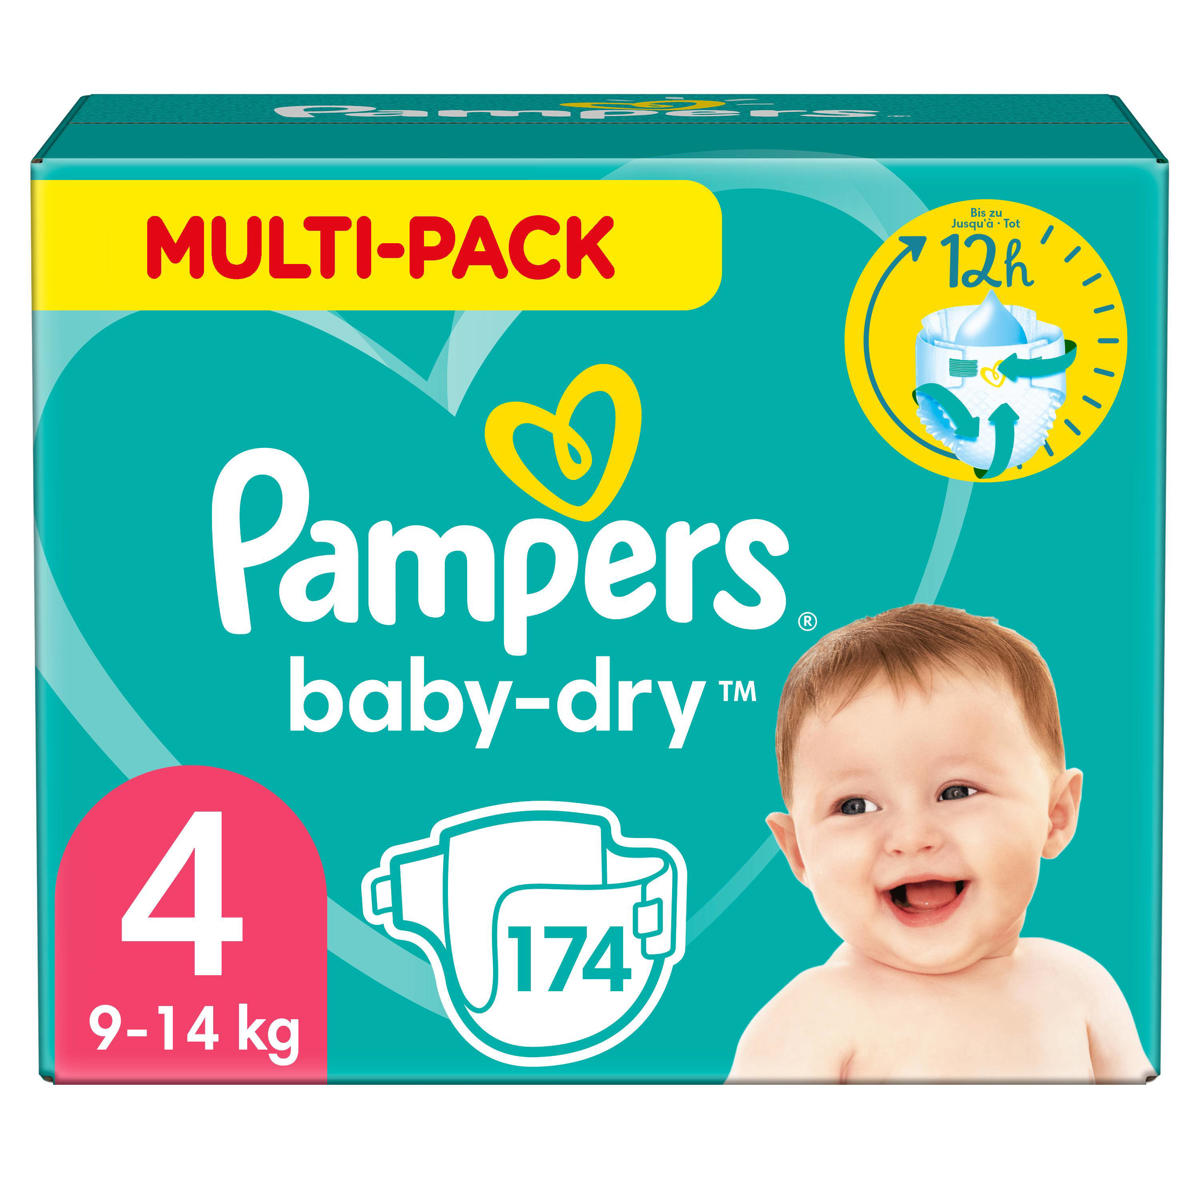 Pampers Baby-Dry Luiers - Maat (9-14 kg) - 174 stuks - Multi-Pack wehkamp